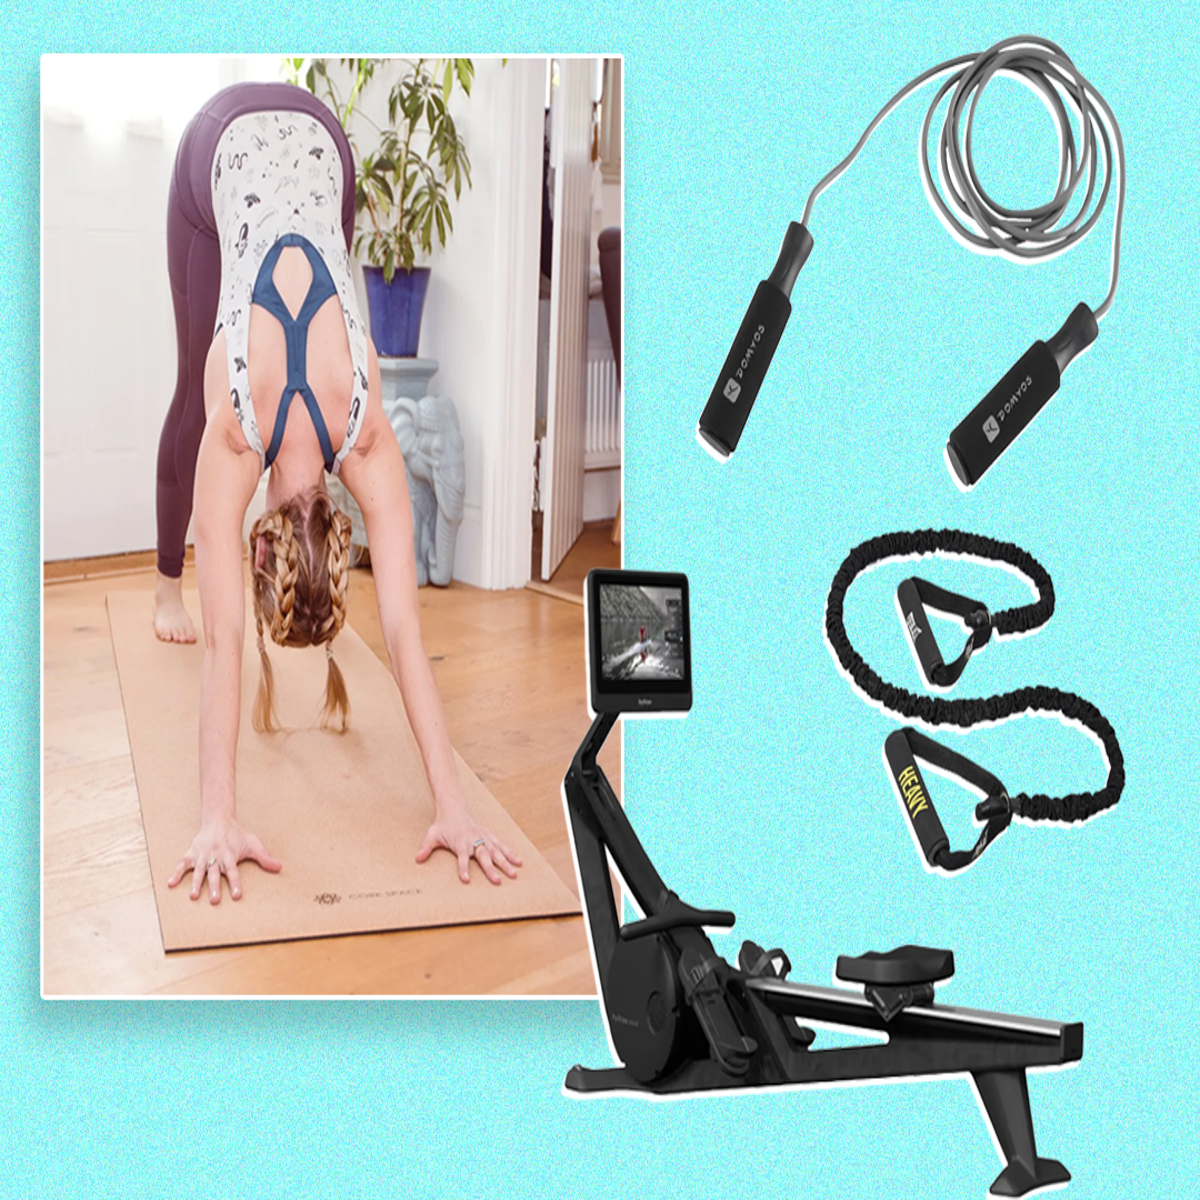 Smart Tech Gym/Workout Equipment, Smart Weight Lifting/Workout